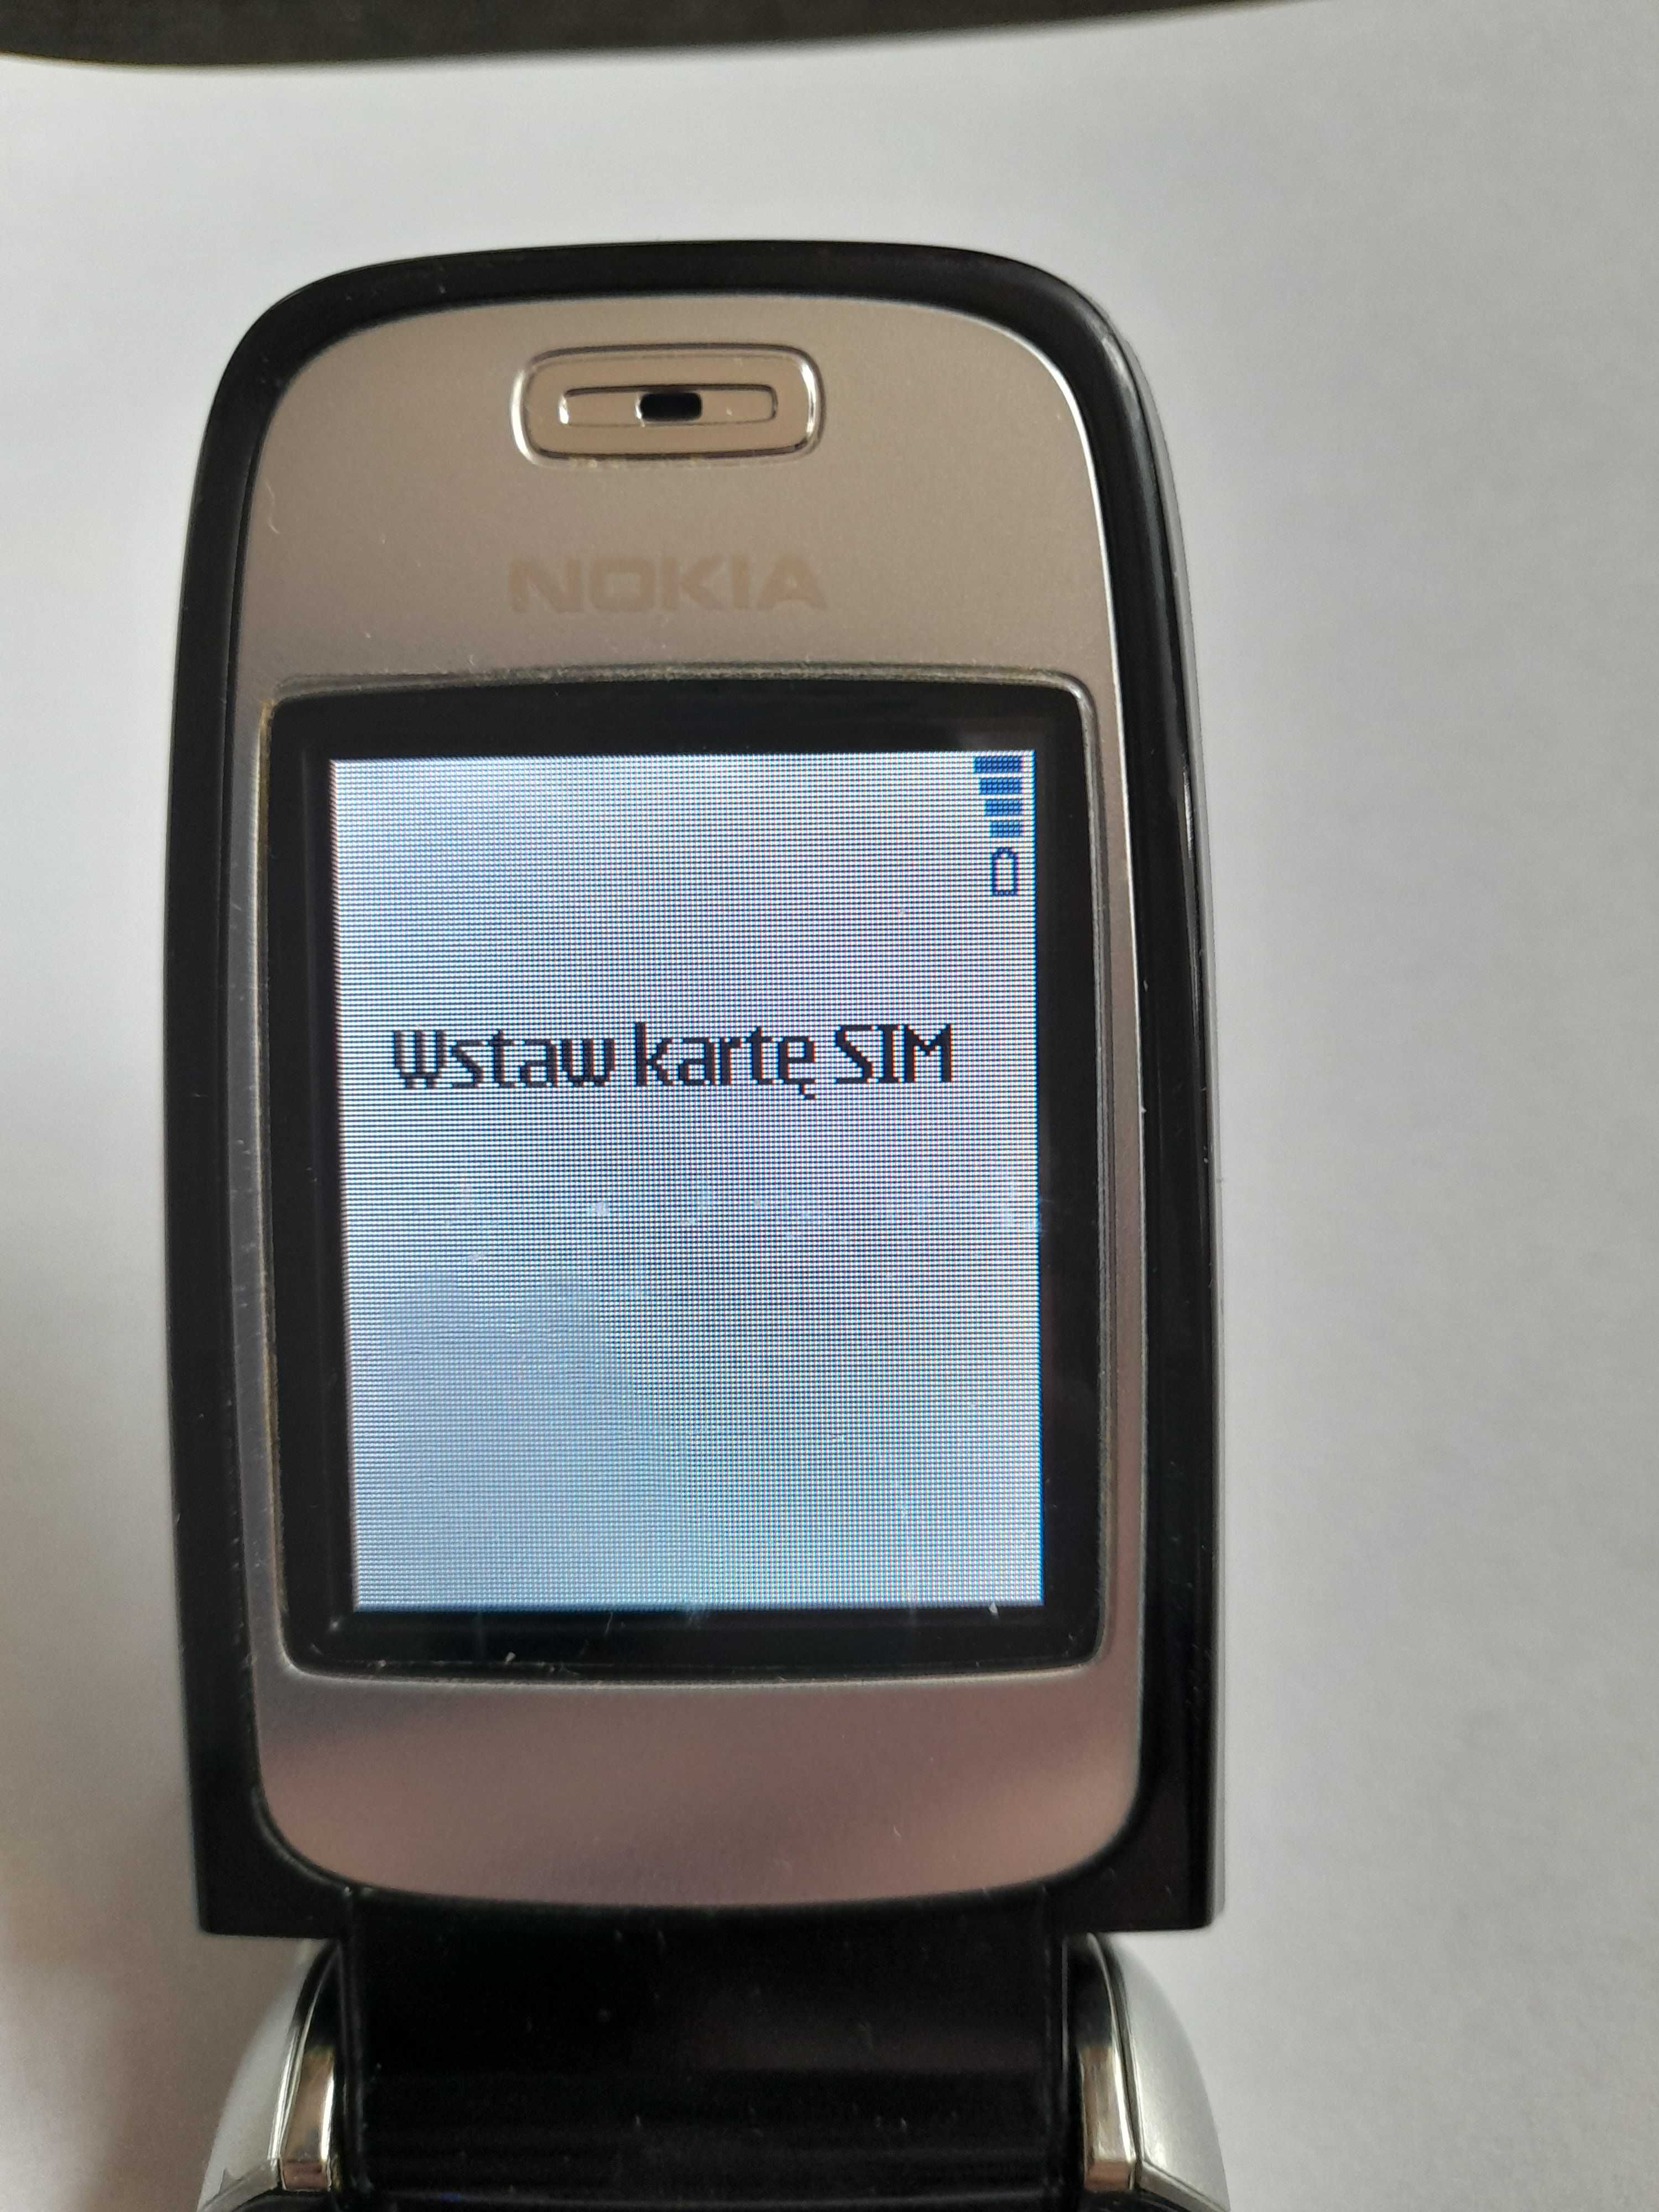 Nokia 6101 Sims 2 Edition Rm-76 - Prawie nowa-kpl.